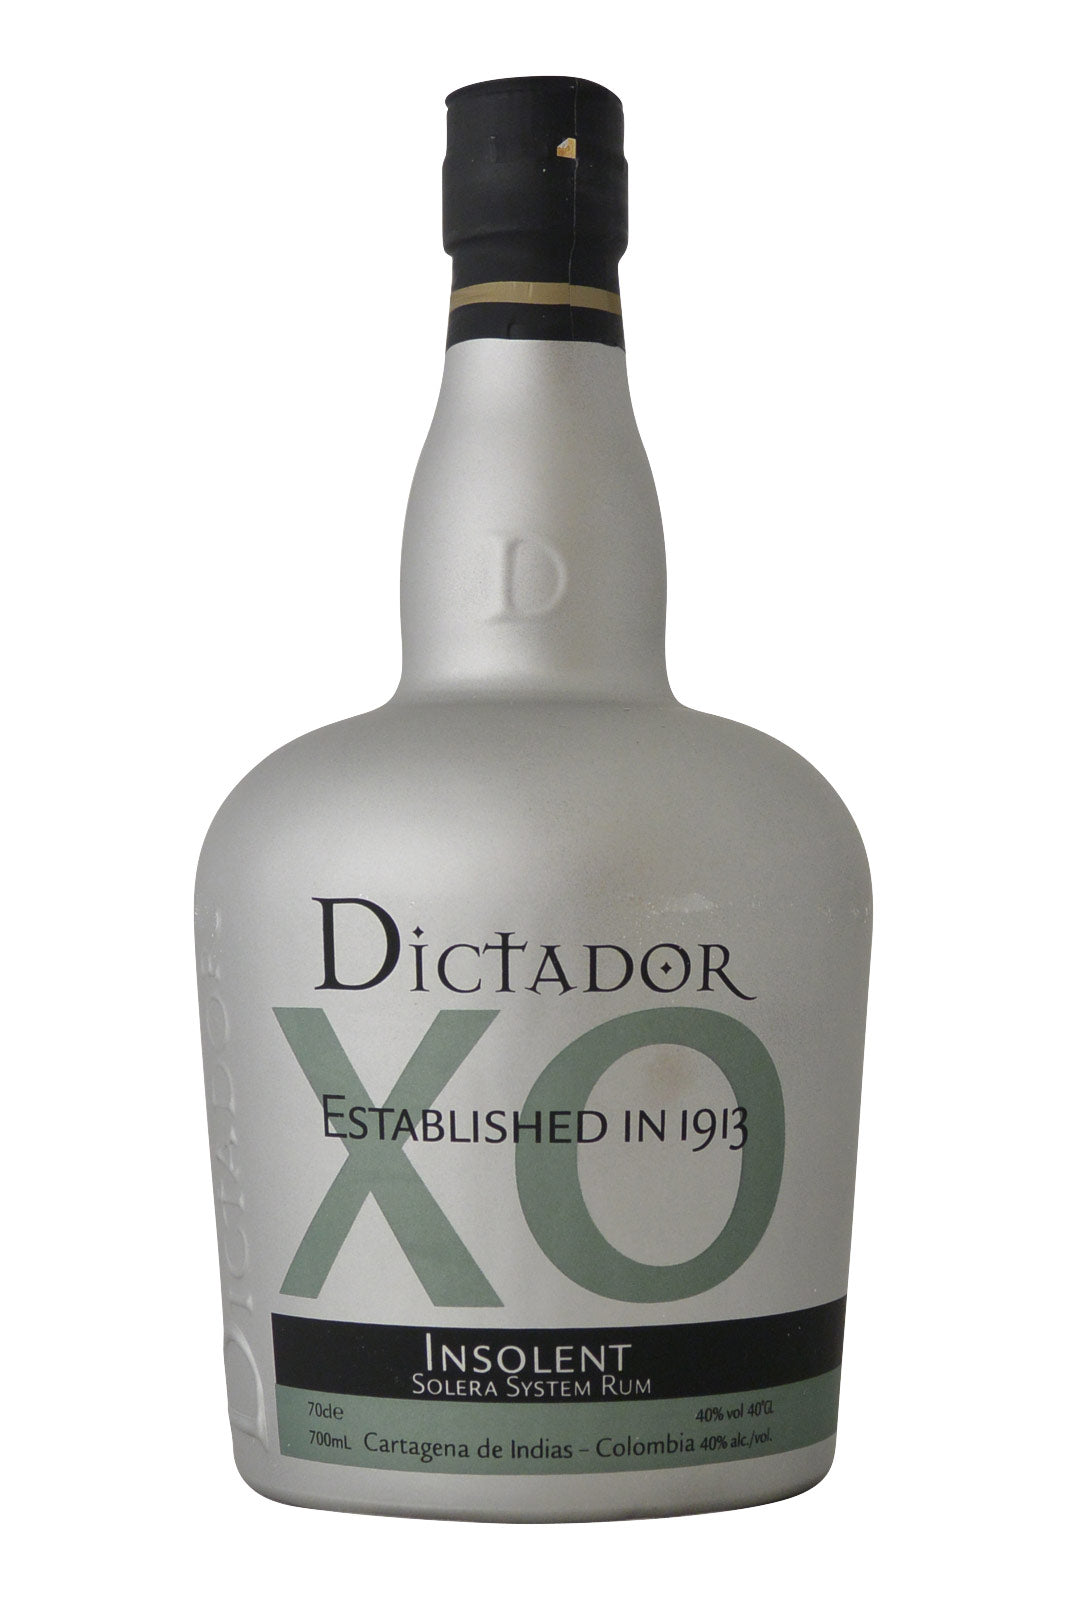 Dictador XO Insolent - Solera System Rum